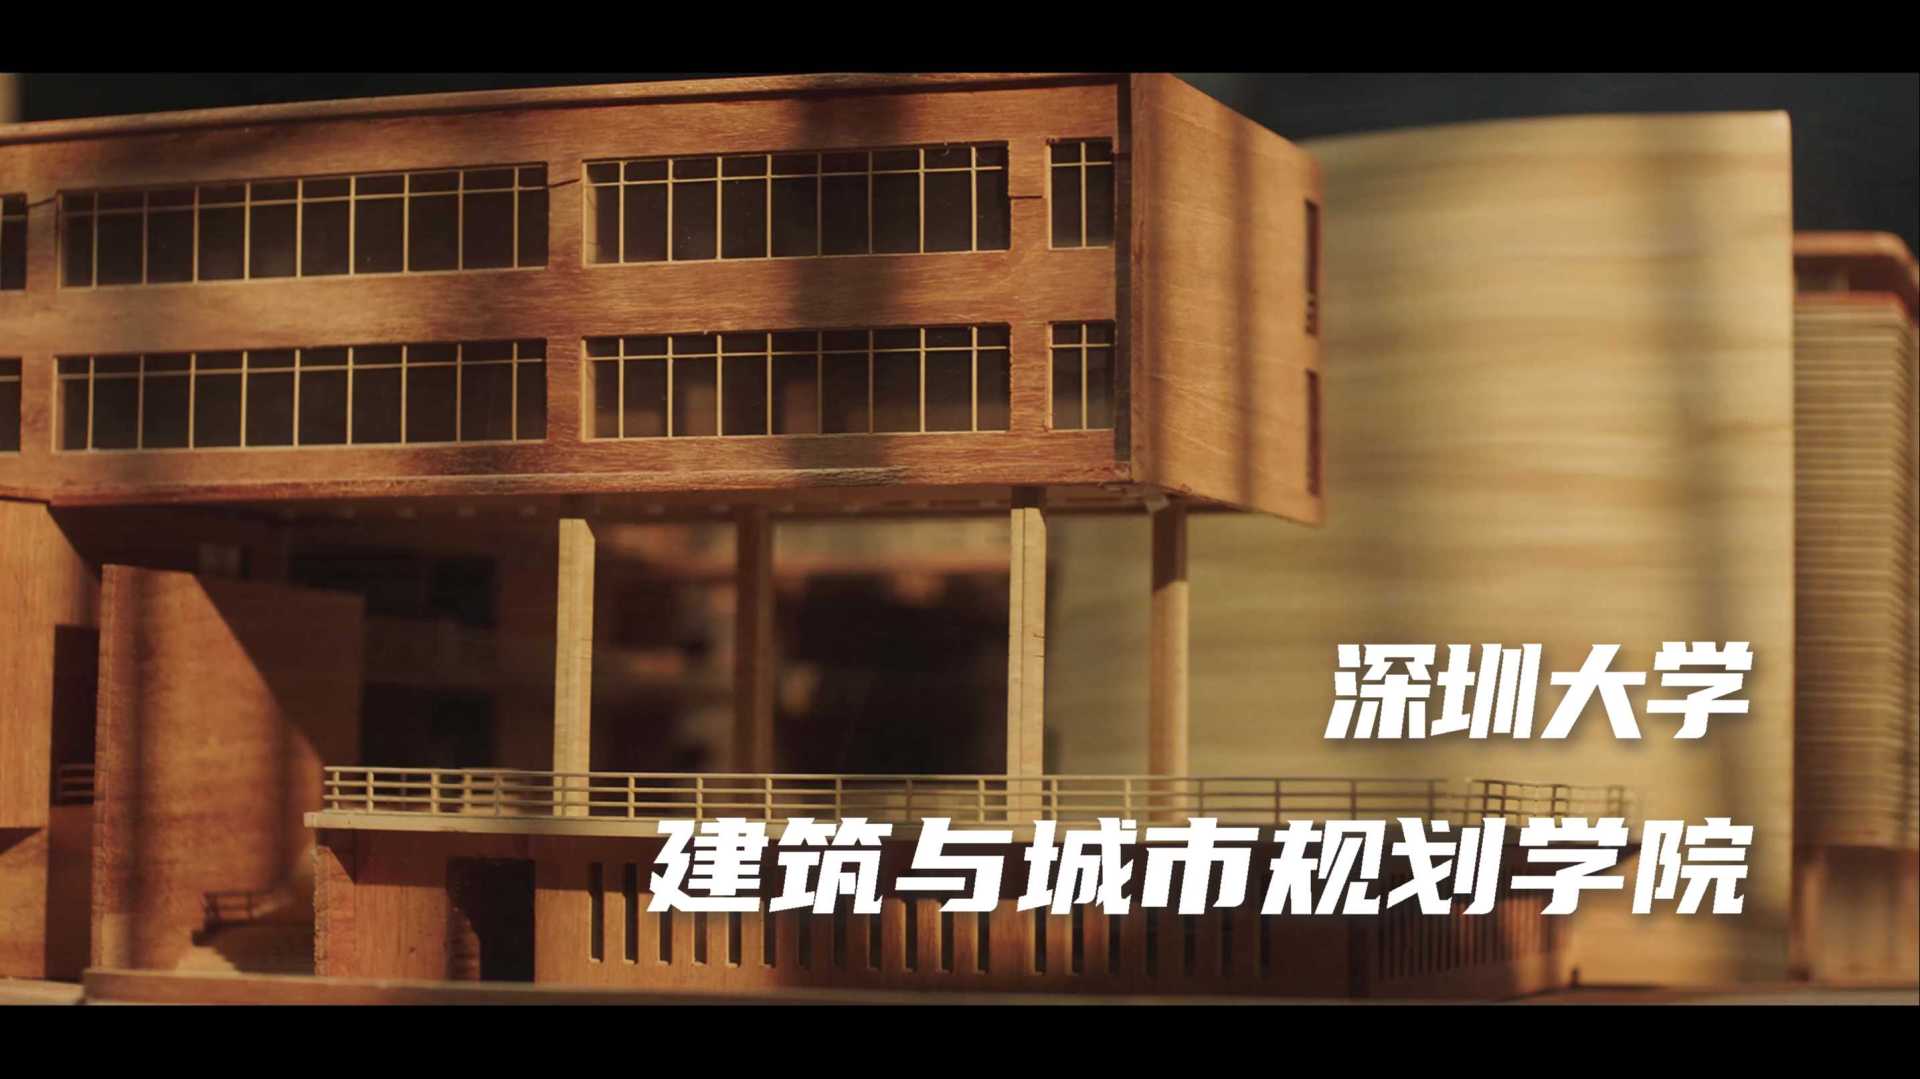 深圳大学建筑与城市规划学院宣传片